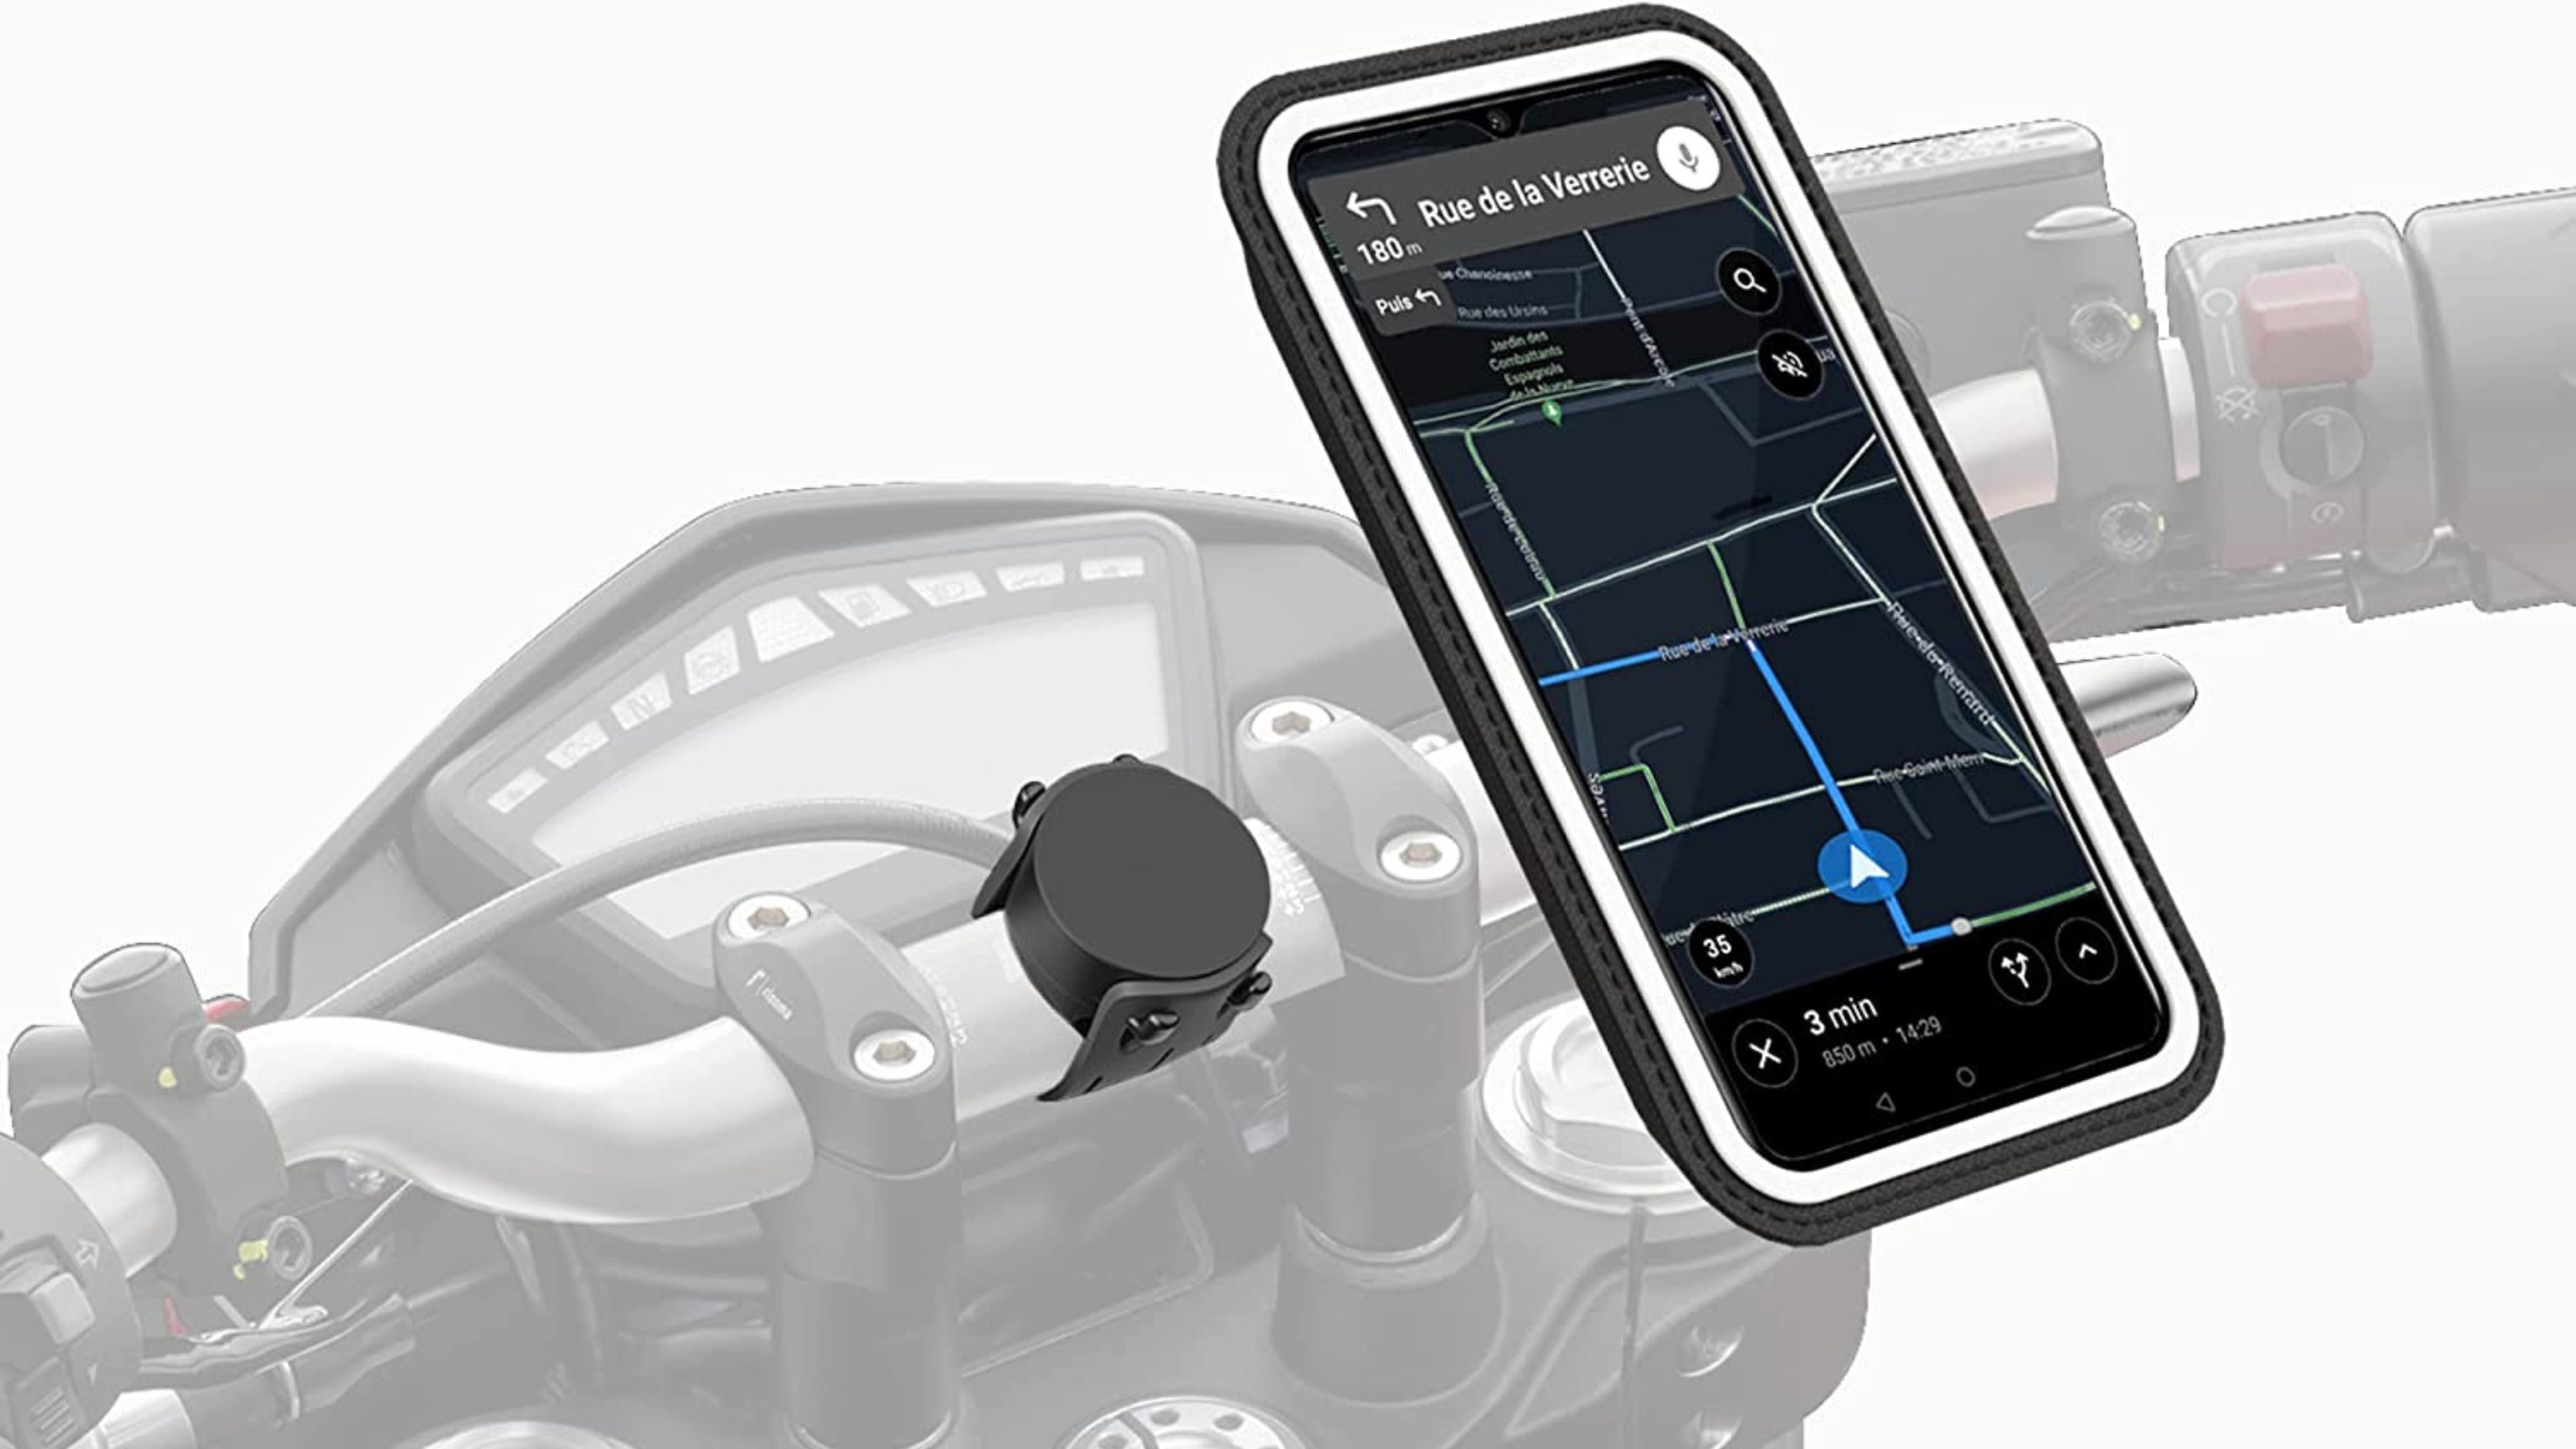 soportes de móviles para motos que comprar | Auto Bild